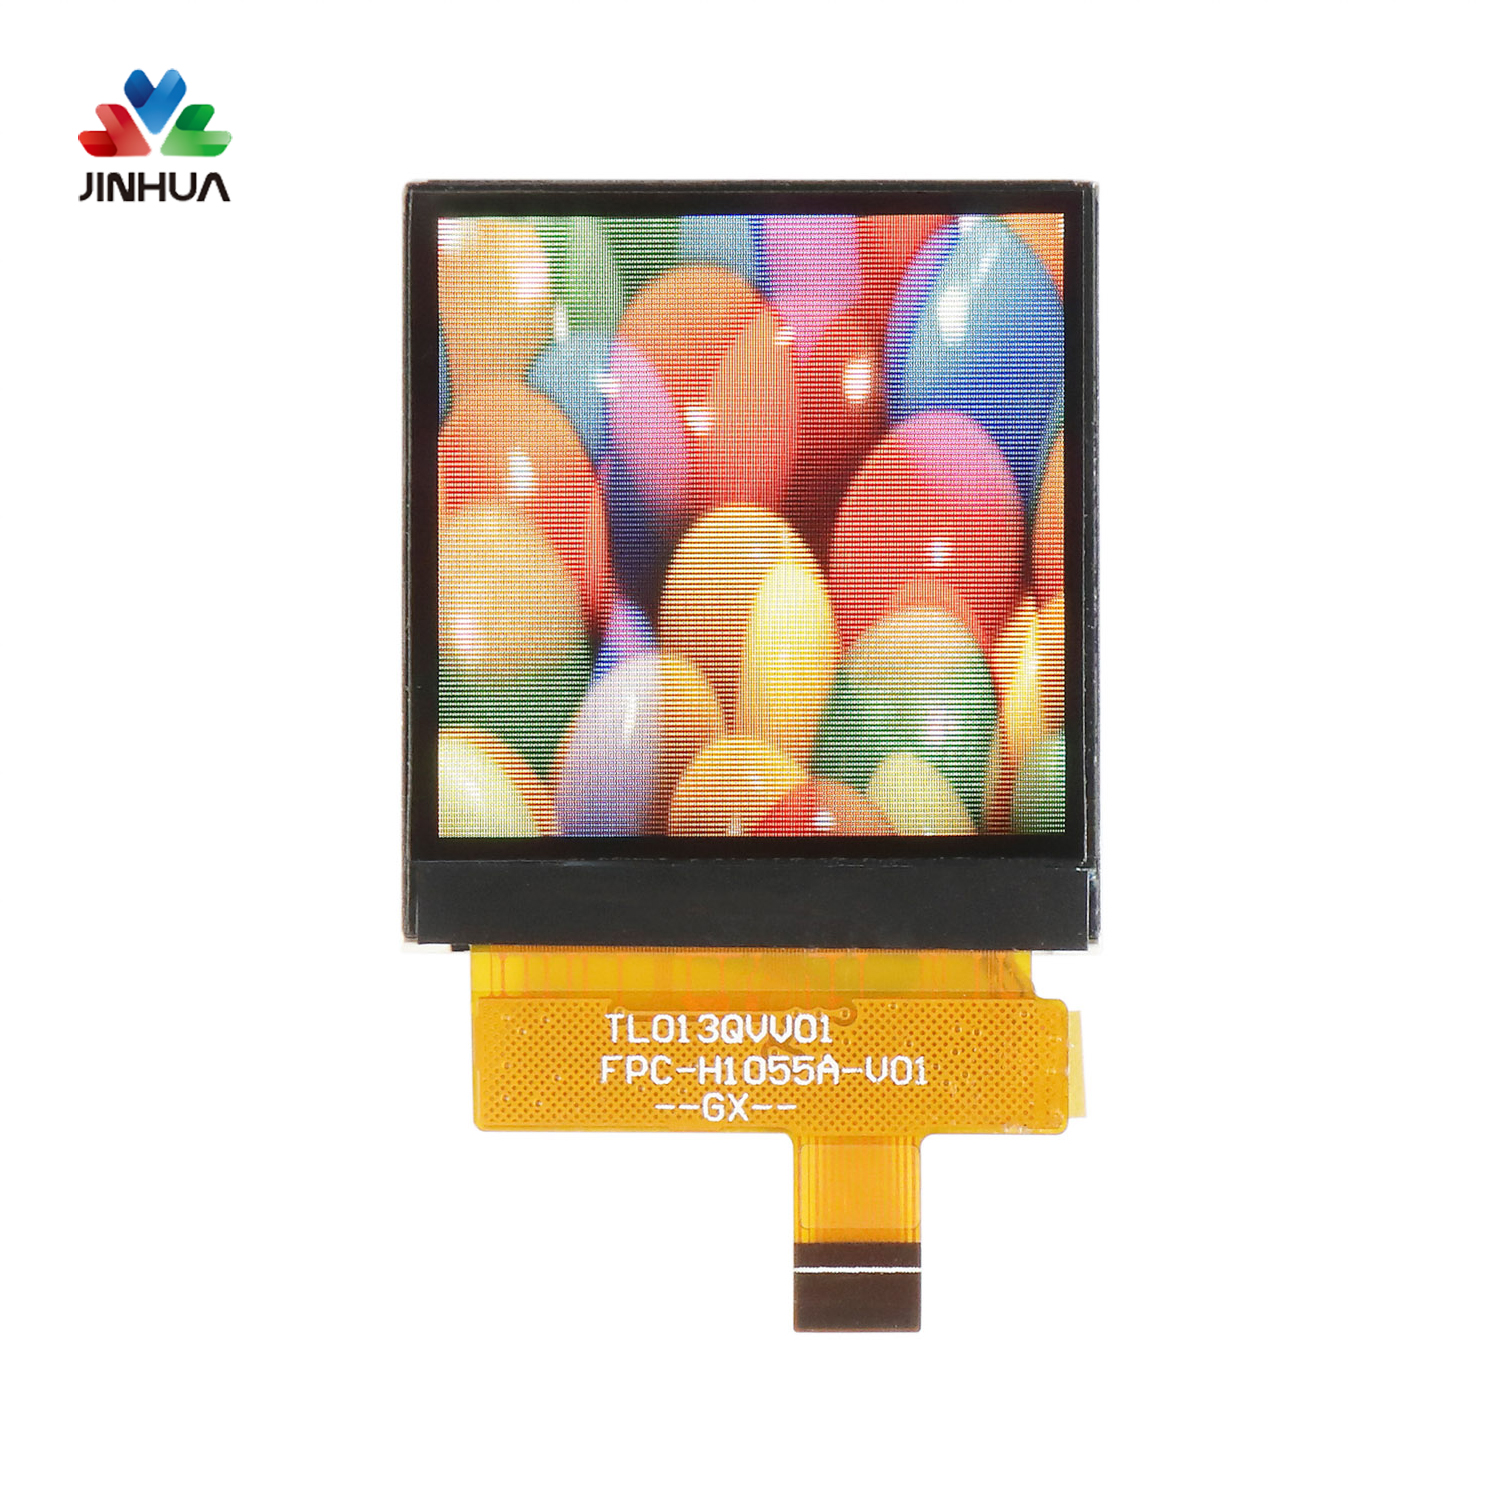 Kleines 1,3-Zoll-IPS-Touchpanel-TFT-Display mit einer Auflösung von 240 x 240